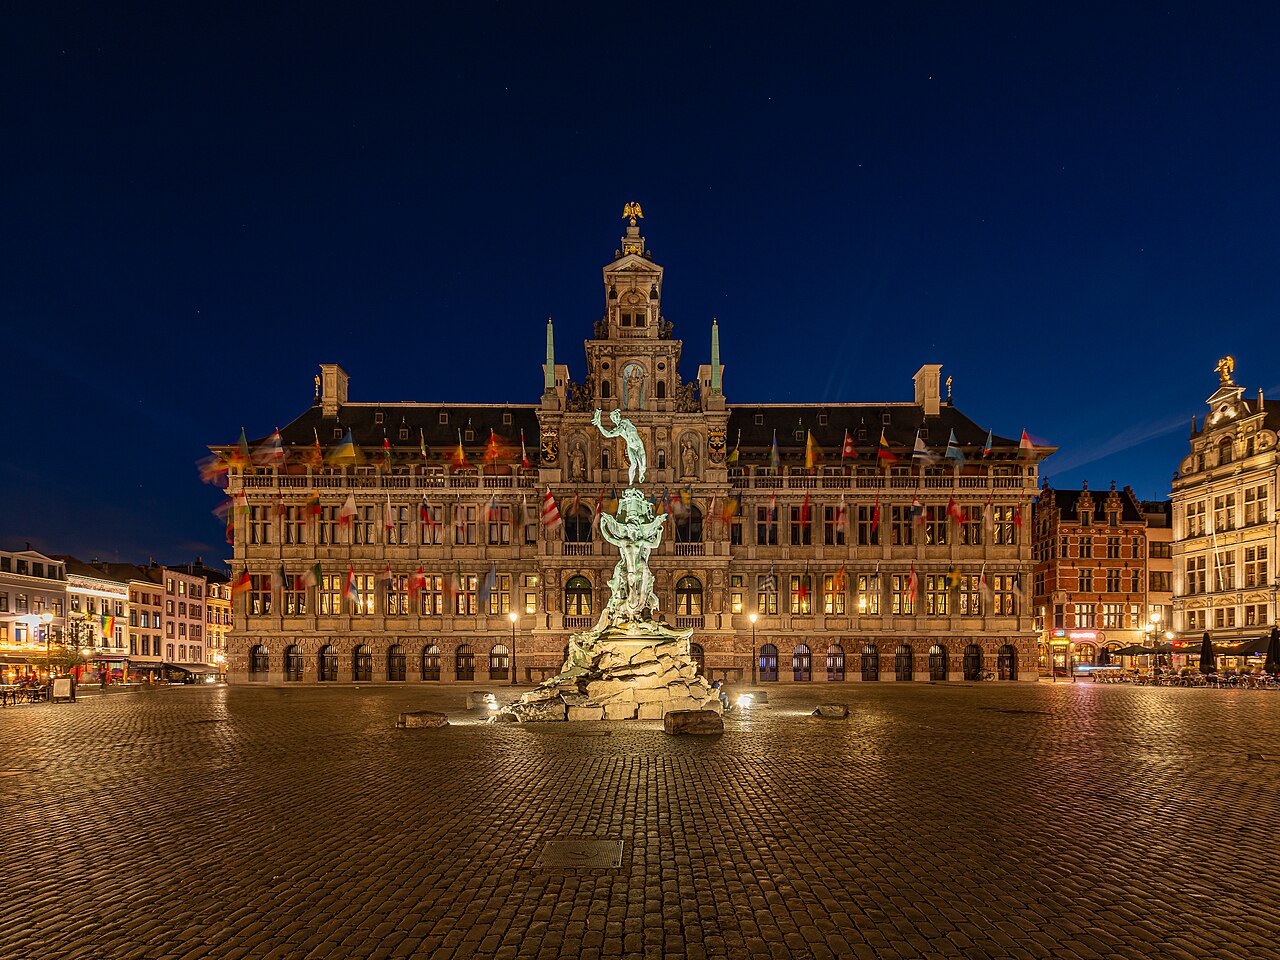 City hall of Antwerp, Belgium